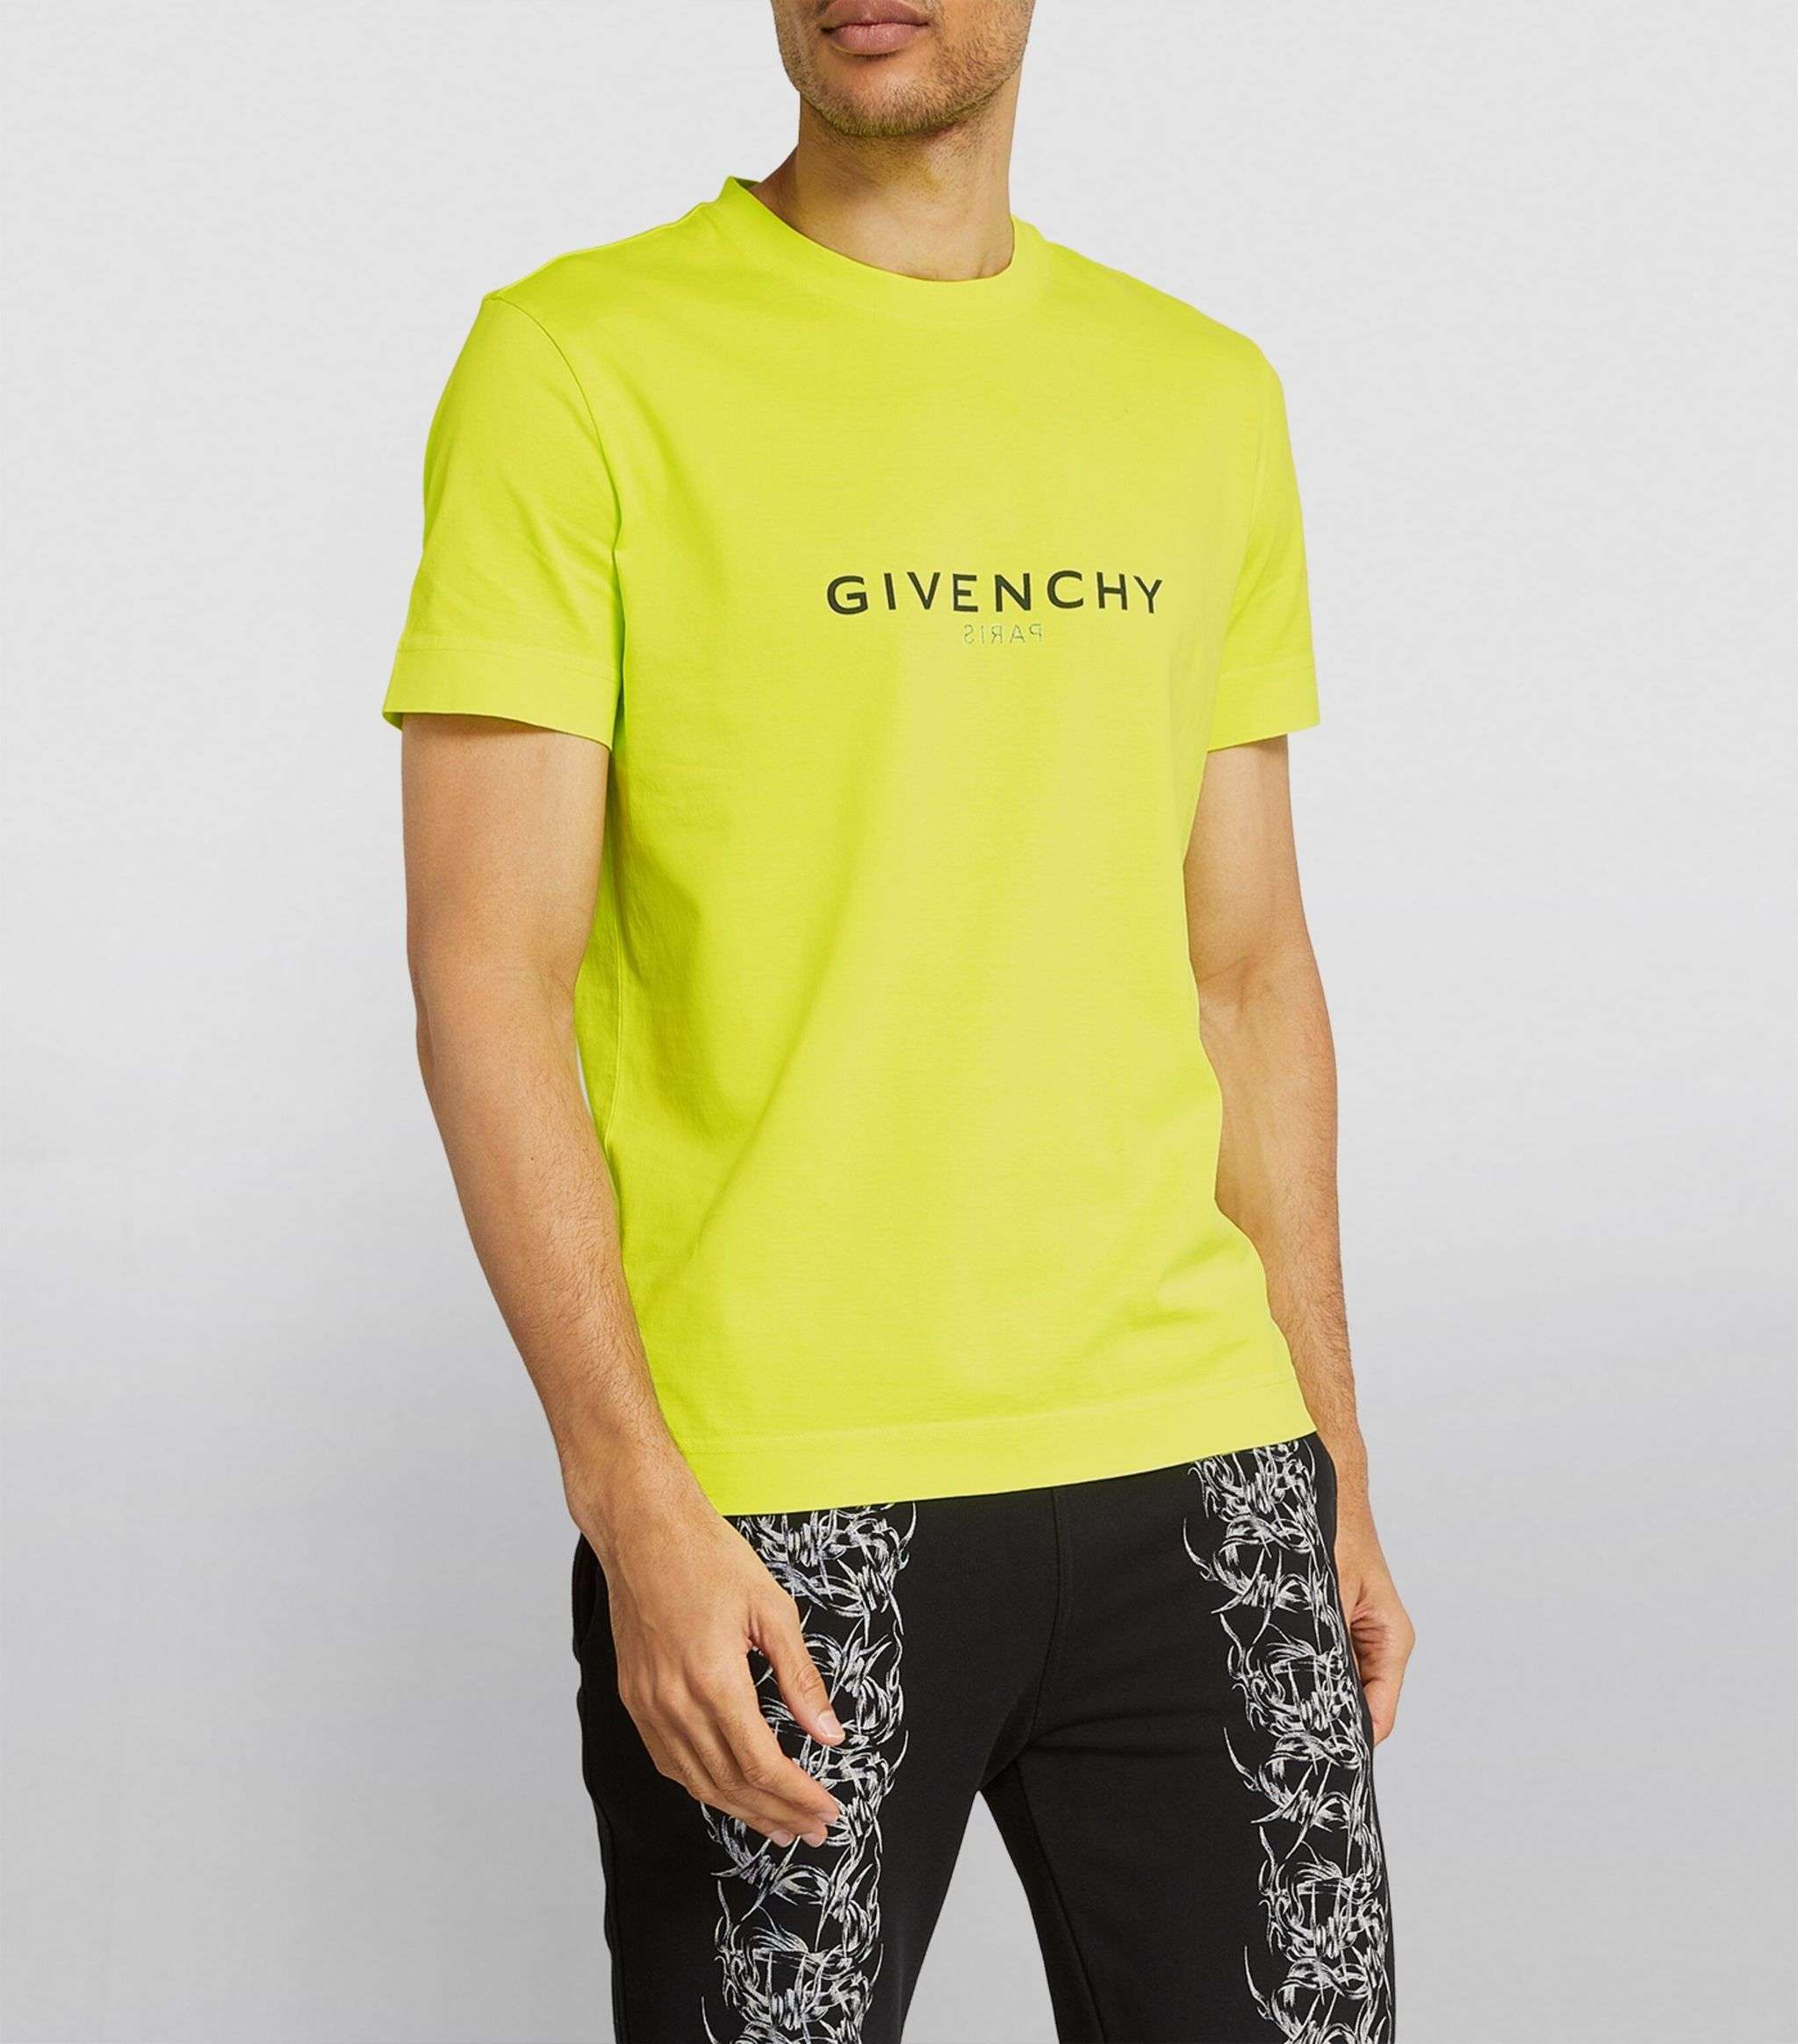 Givenchy T-Shirt: